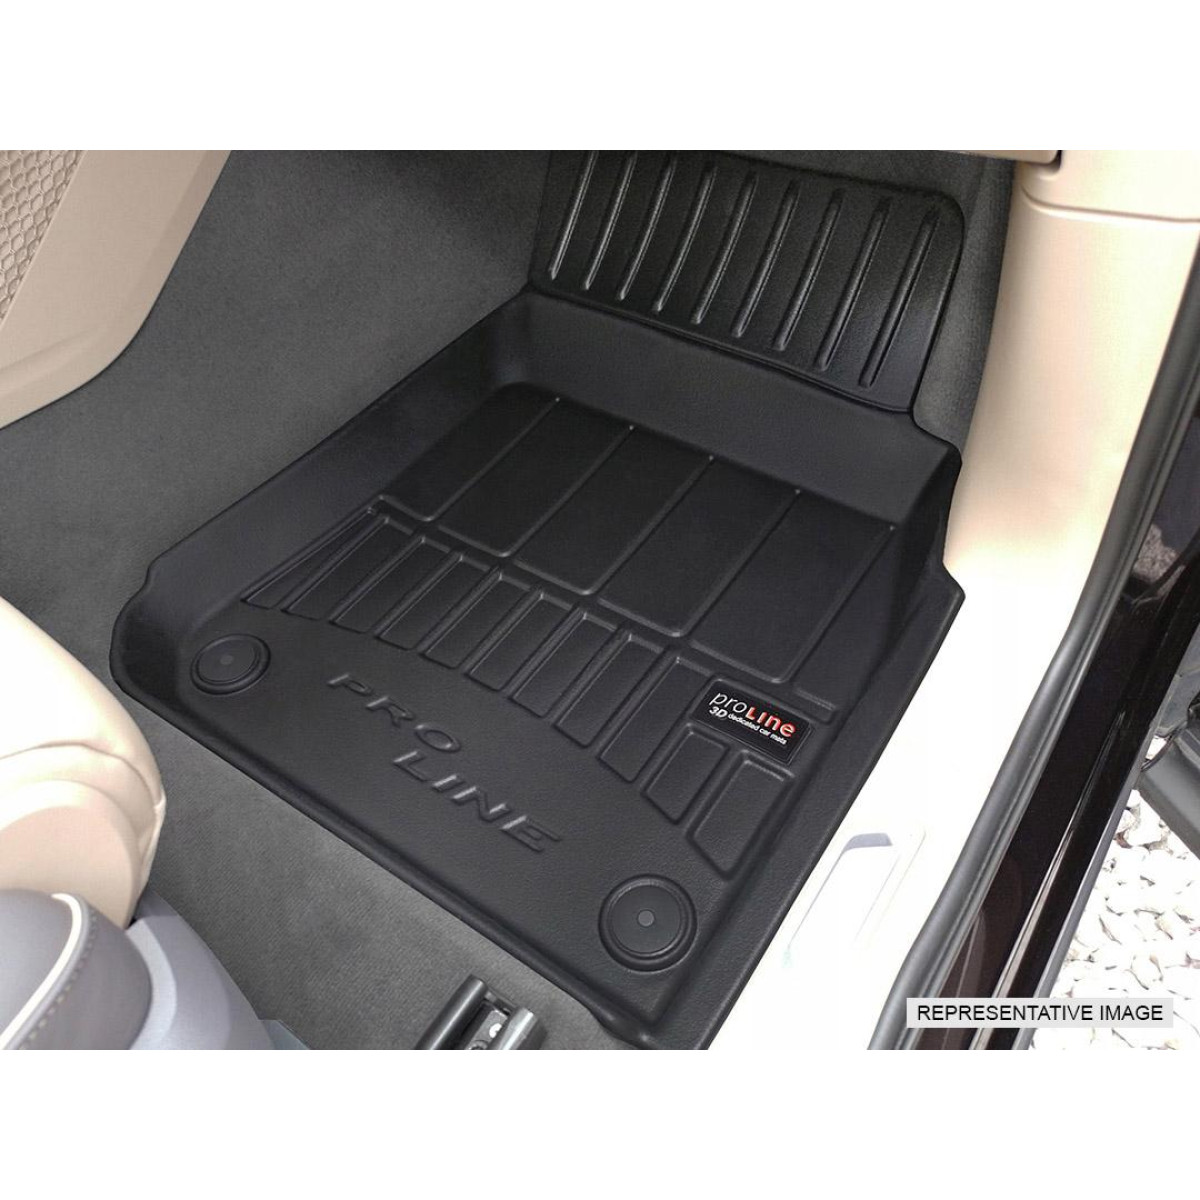 Guminiai kilimėliai Proline BMW X1 F48 nuo 2015m. / paaukštintais kraštais